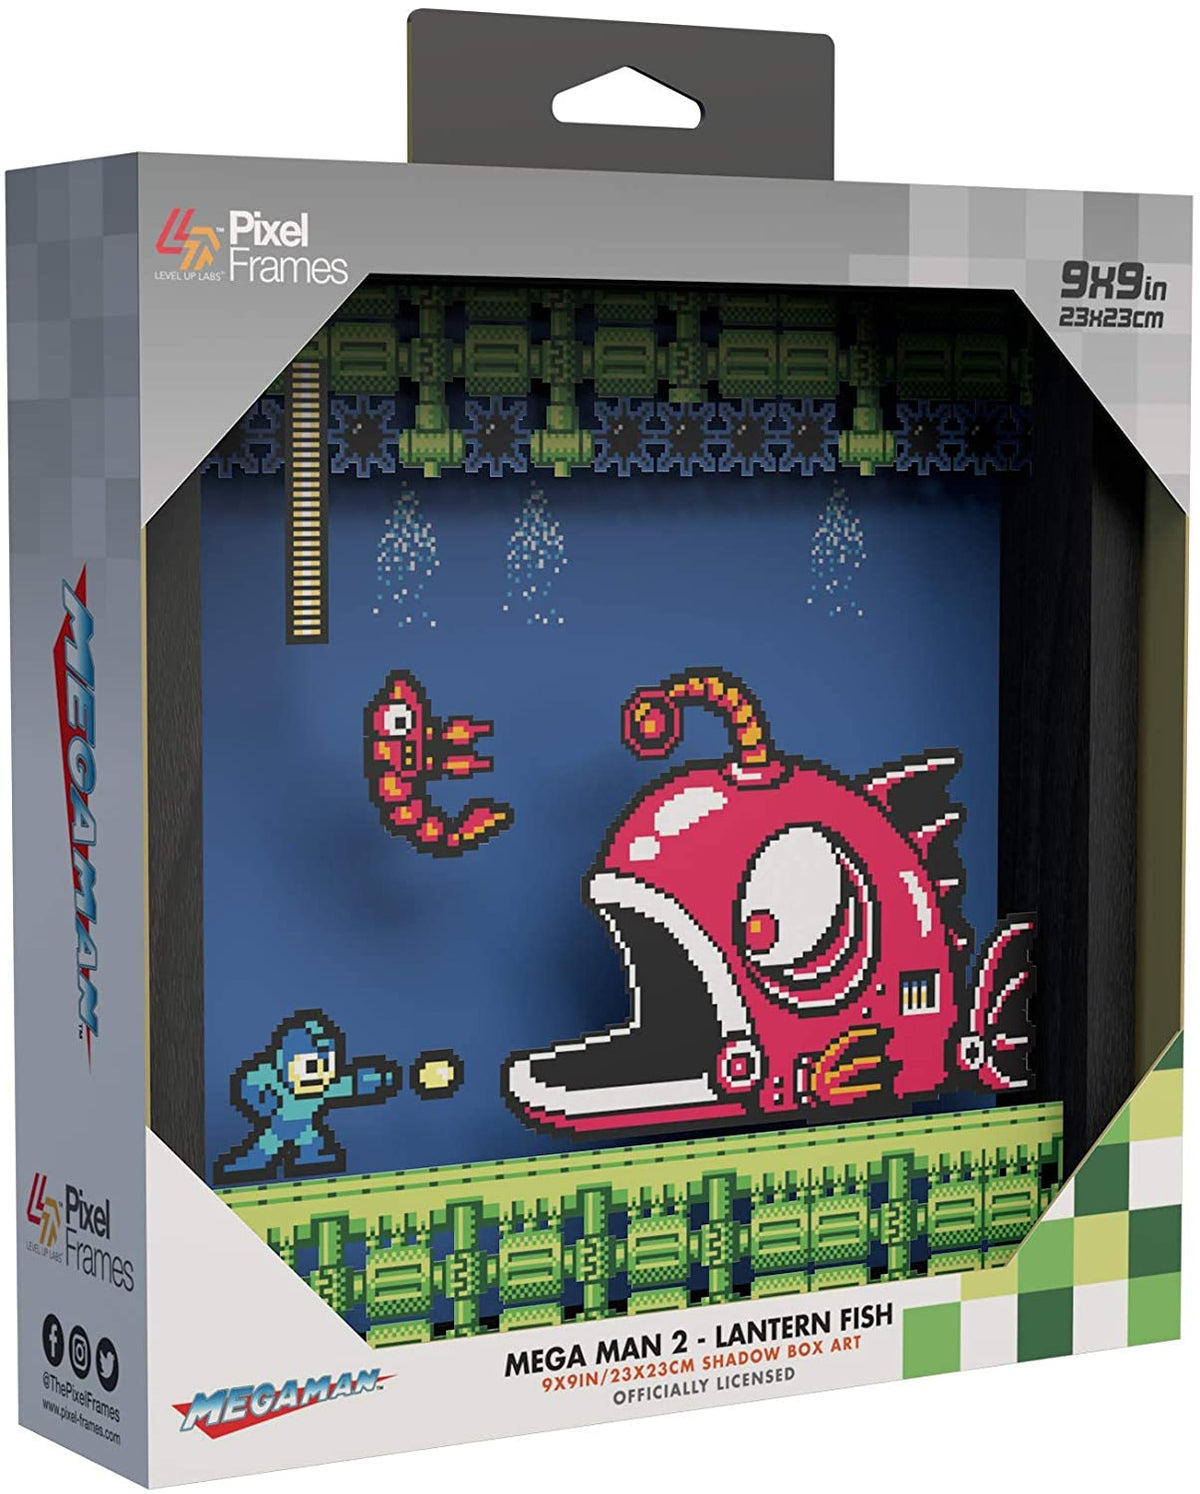 Pixel Frames - Megaman 2 Lantern Fish Gamesellers.nl